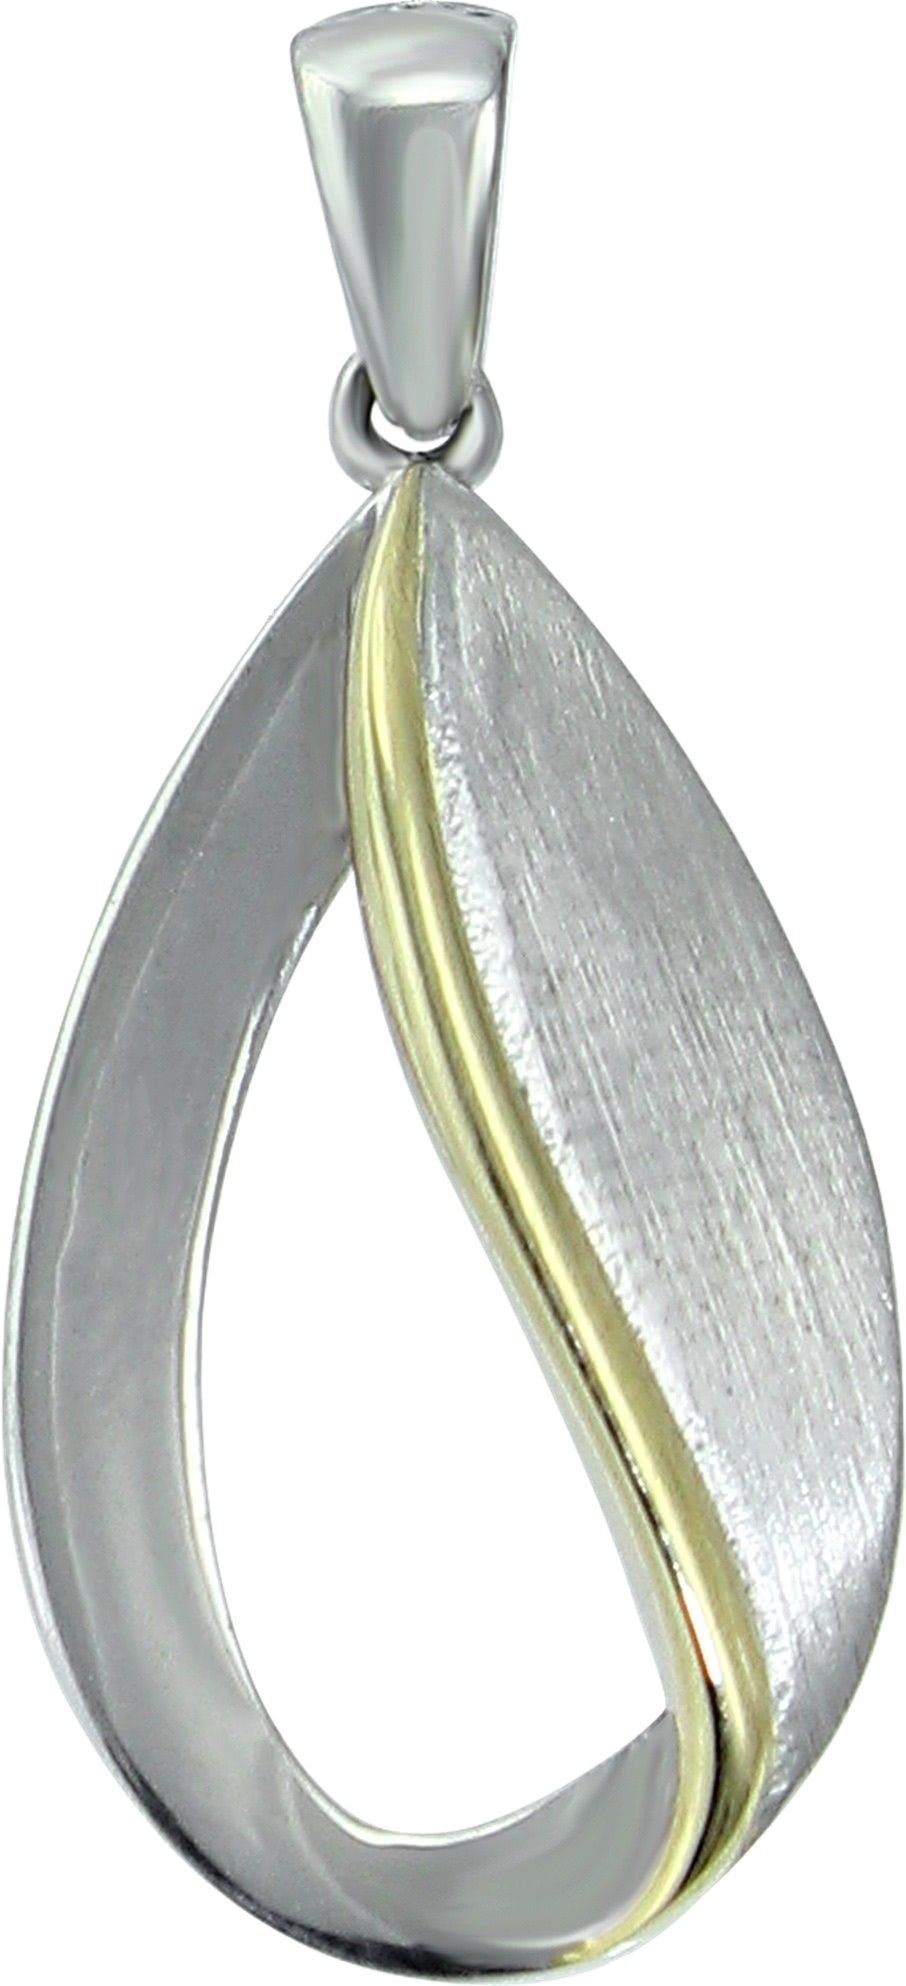 SilberDream Kettenanhänger SilberDream Damen Träne Ketten-Anhänger, Träneanhänger 925 Sterling Silber, silber, gold